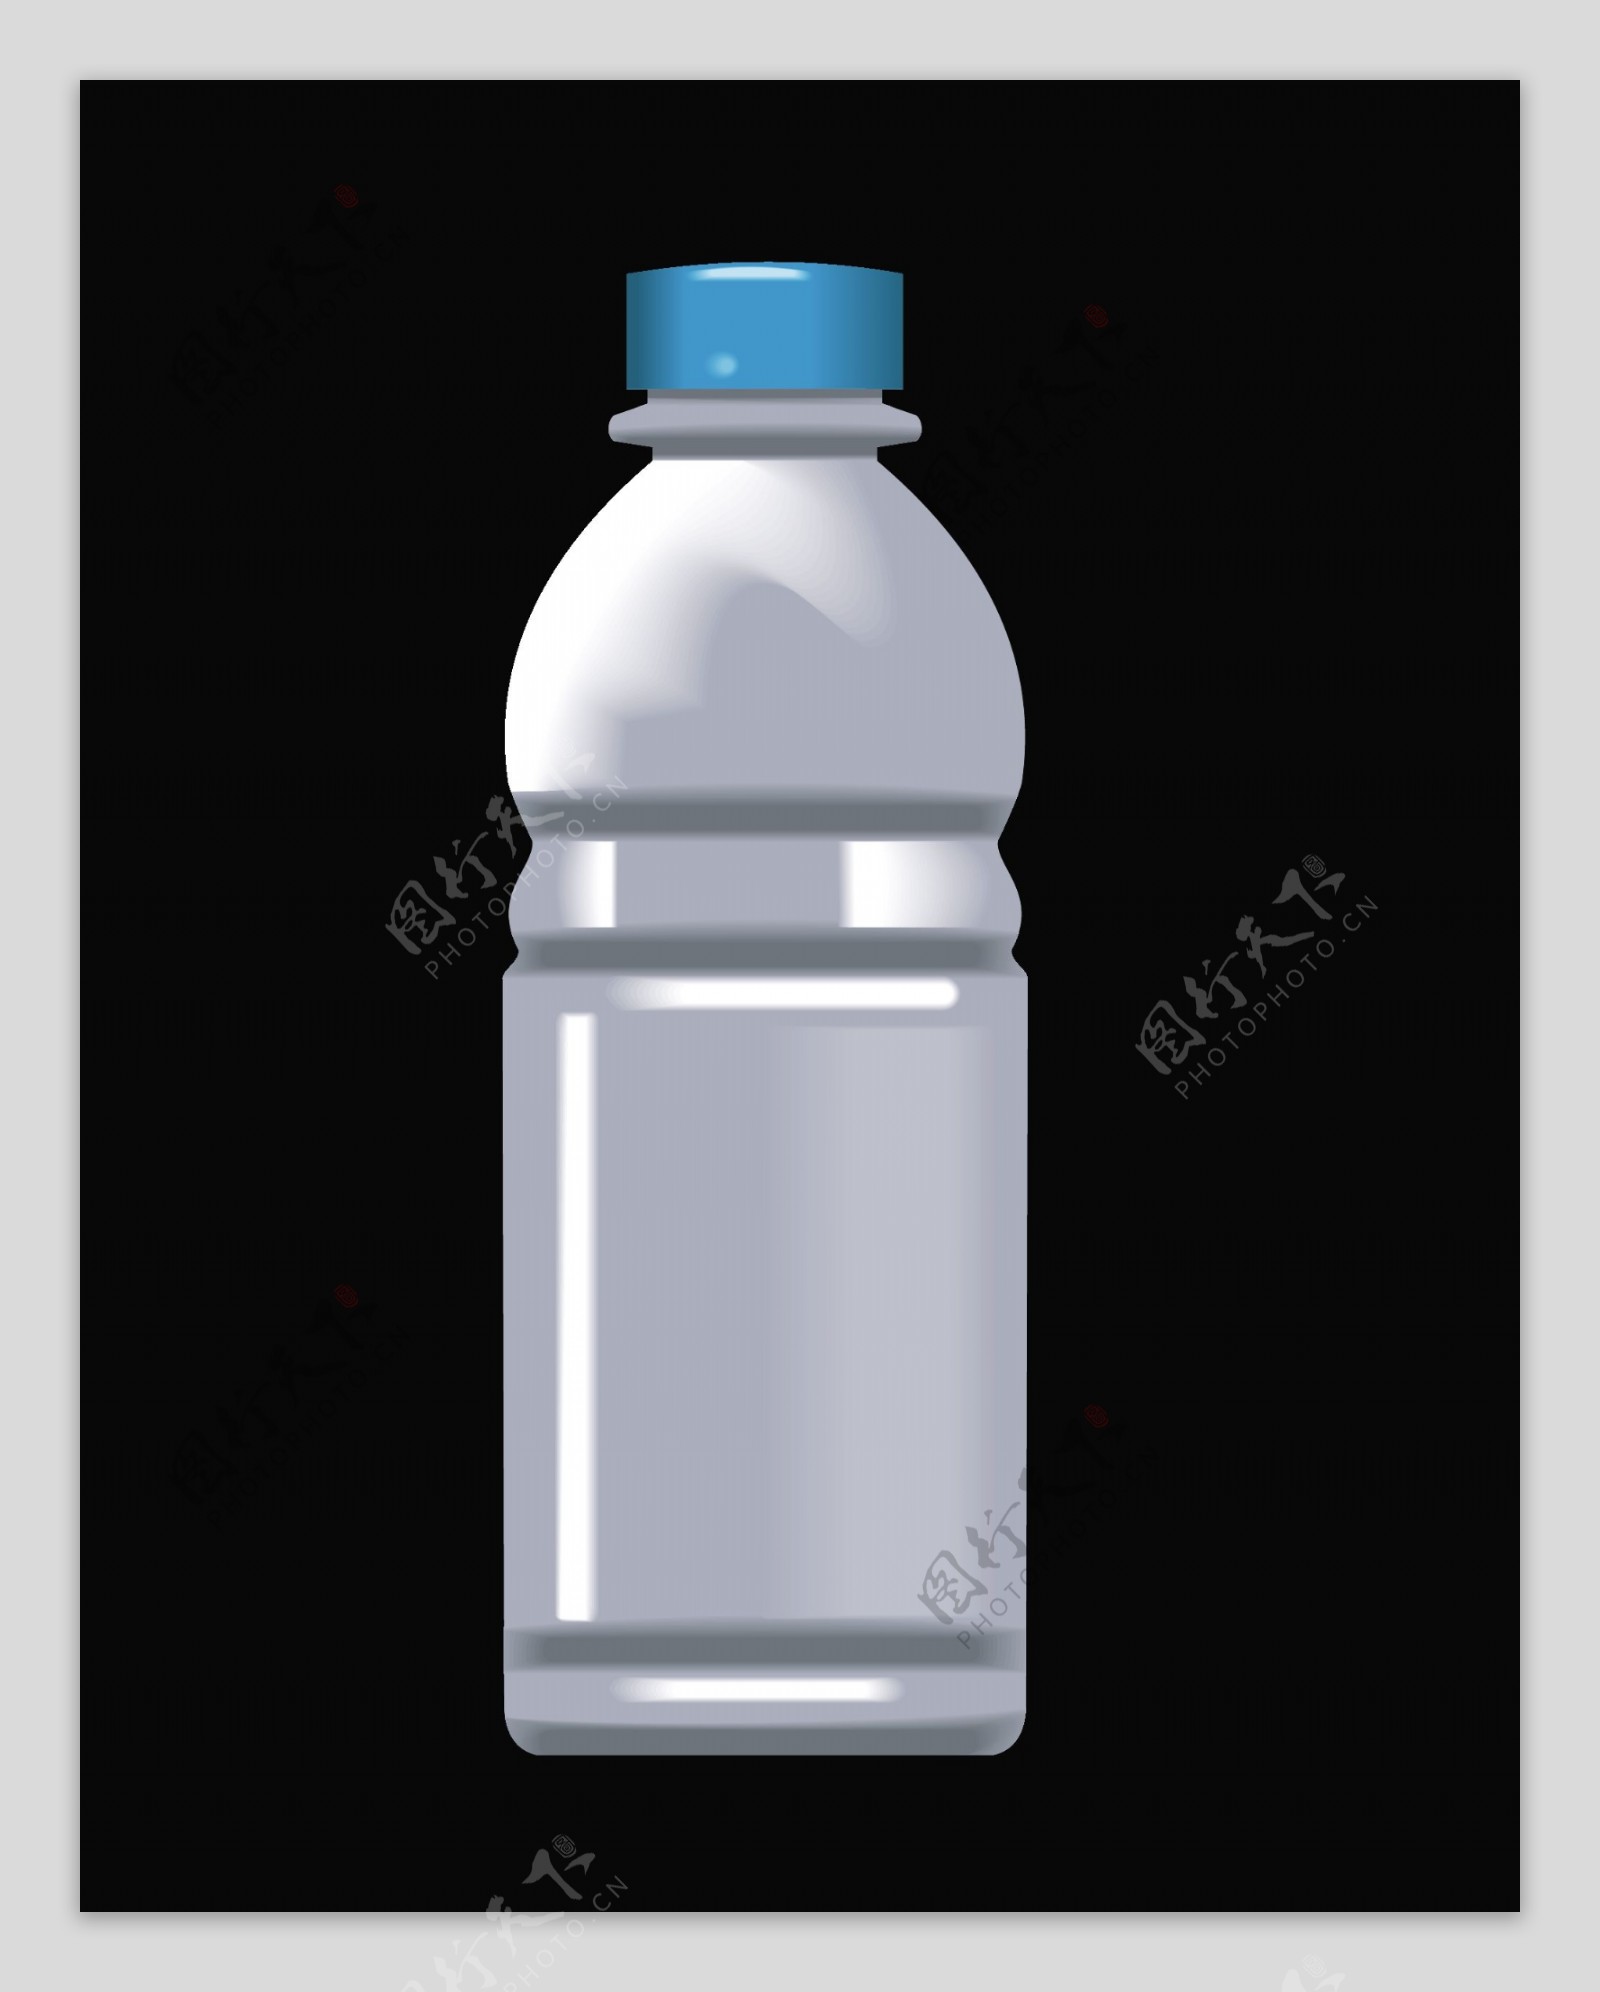 塑料瓶的容器